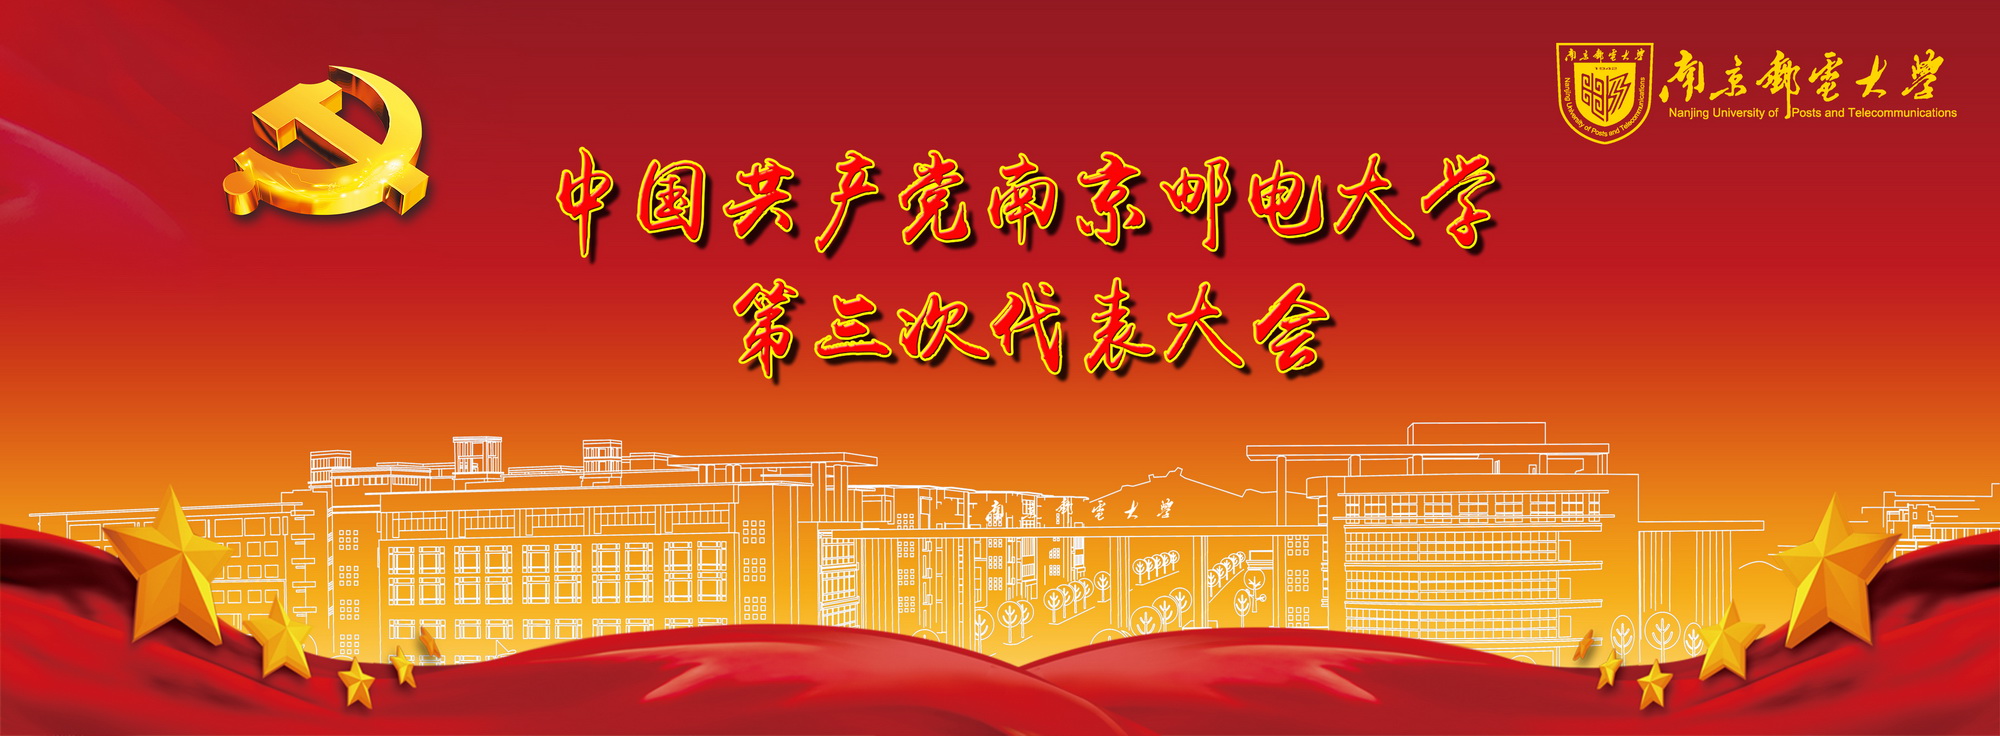 南京邮电大学第三次党代会专题网站